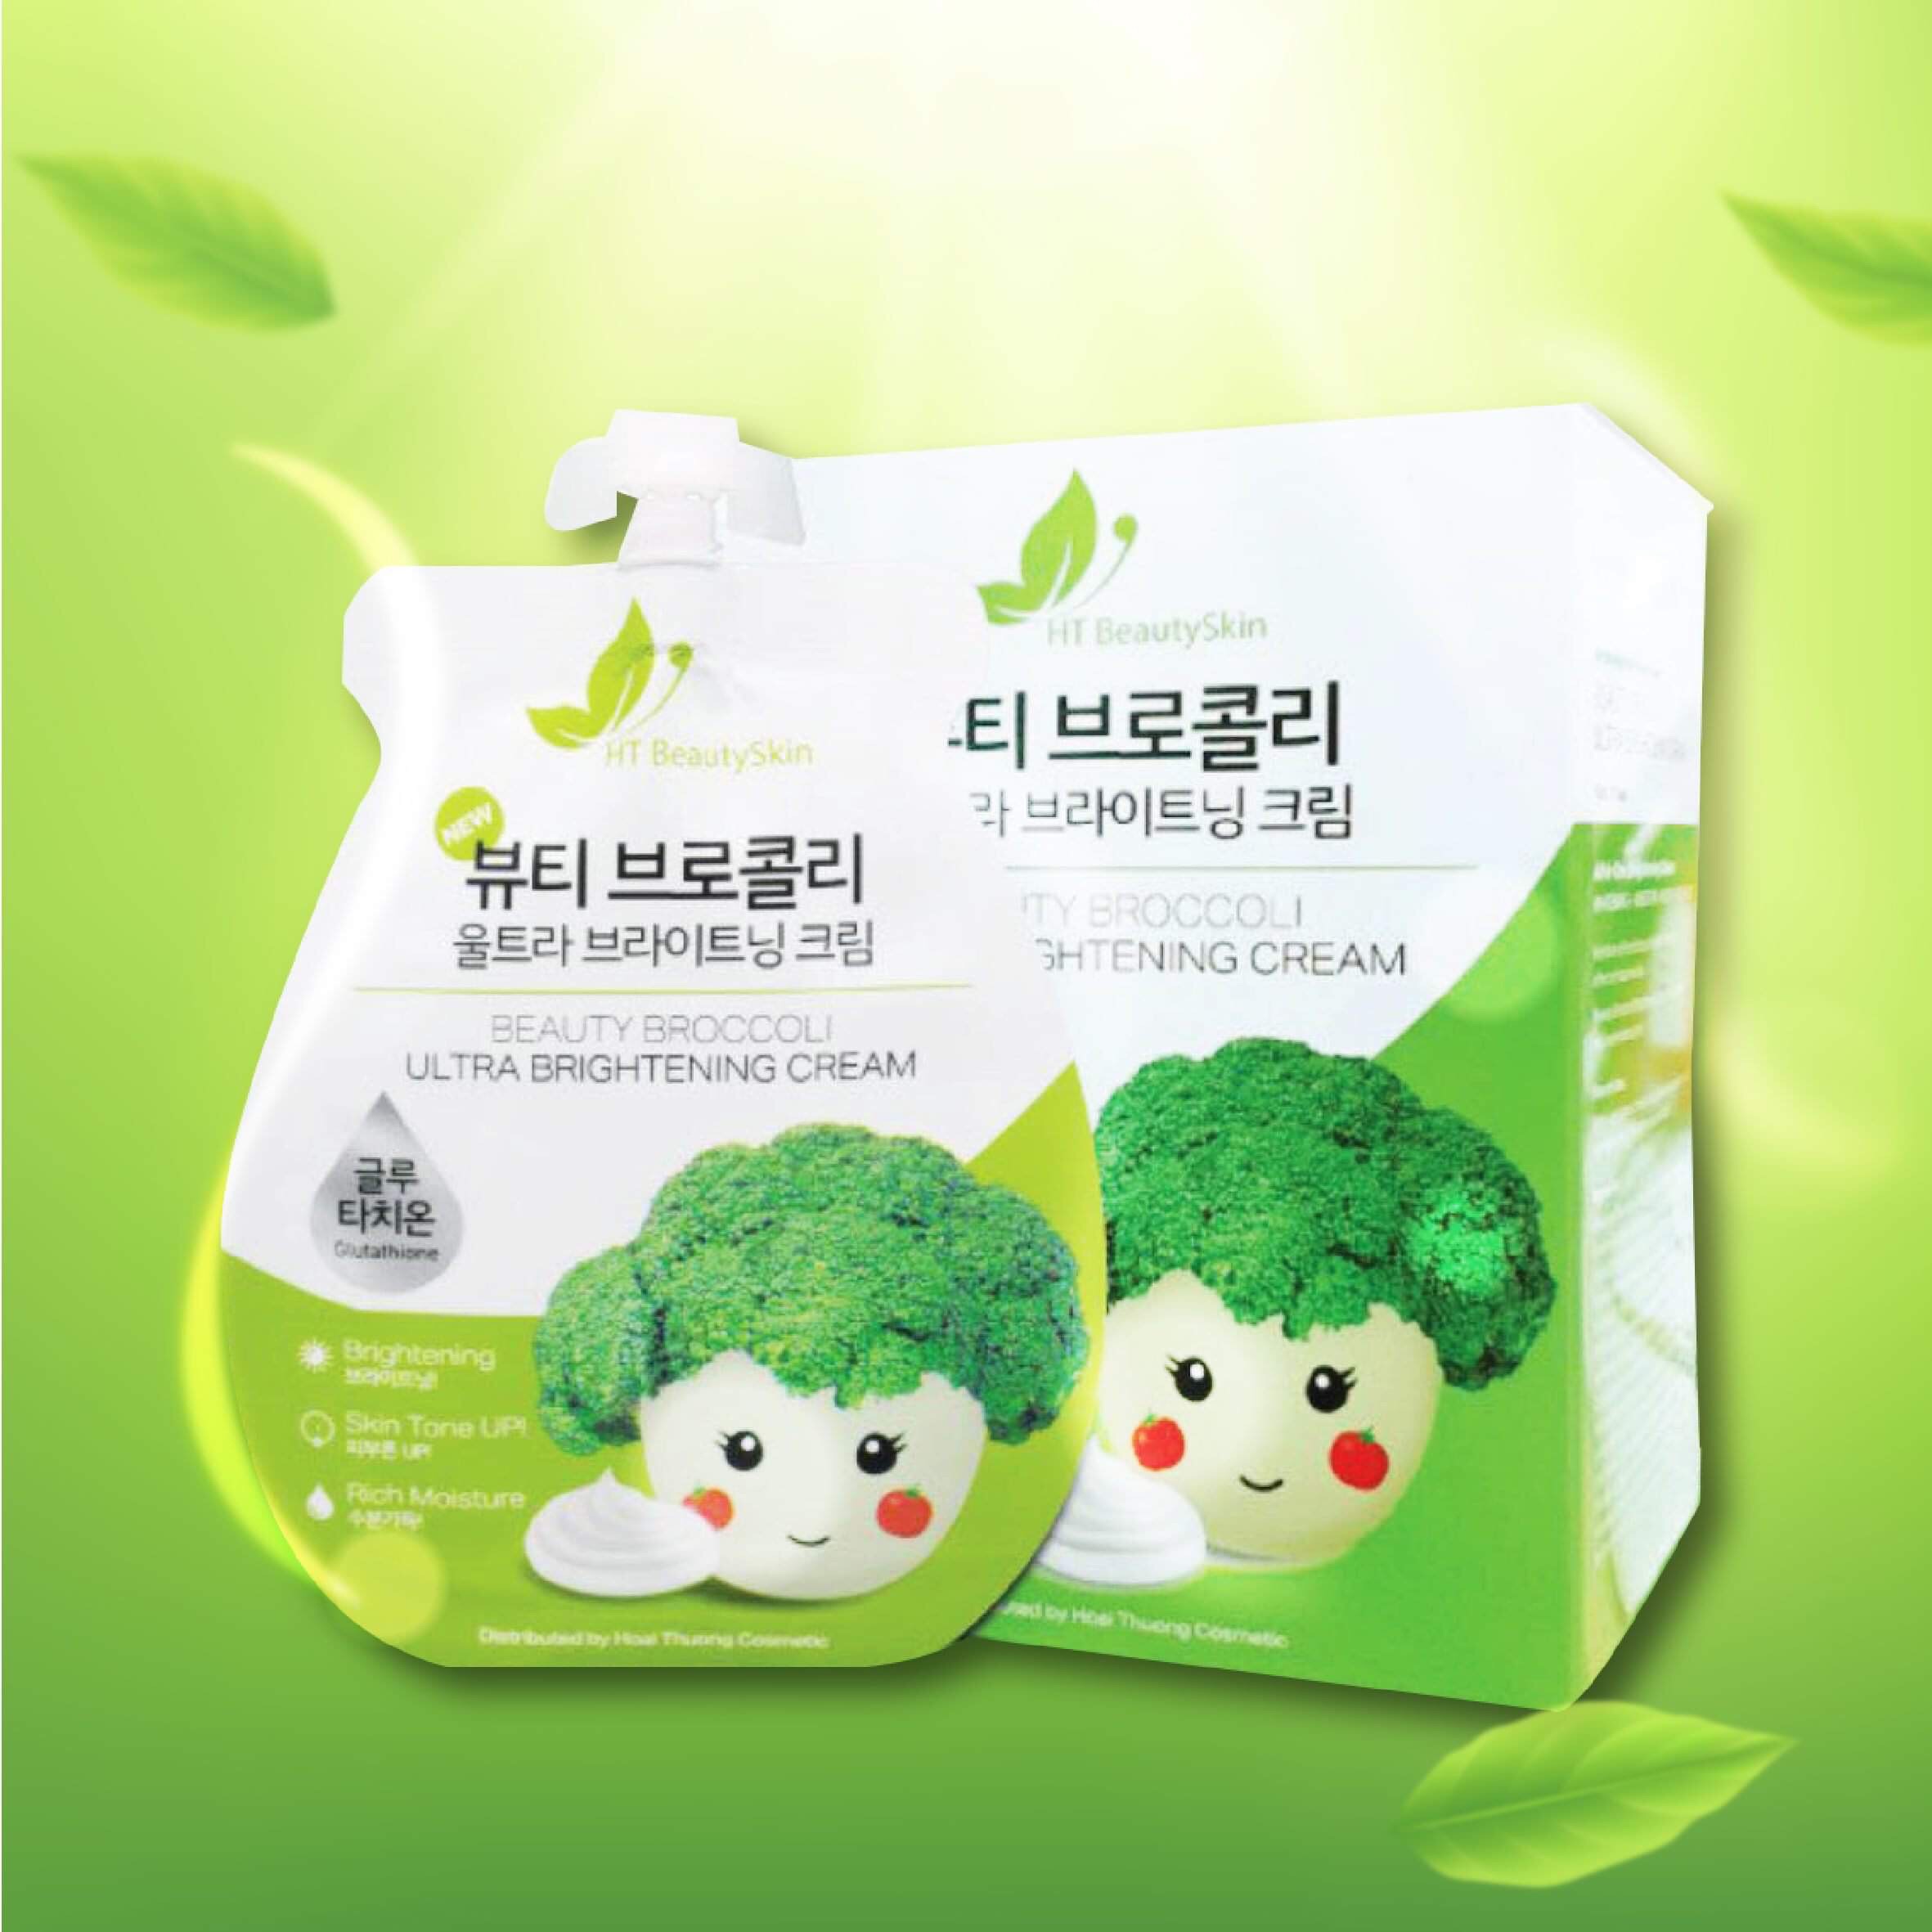 KEM FACE SÚP LƠ - Beauty Broccoli Ultra Brightening Cream